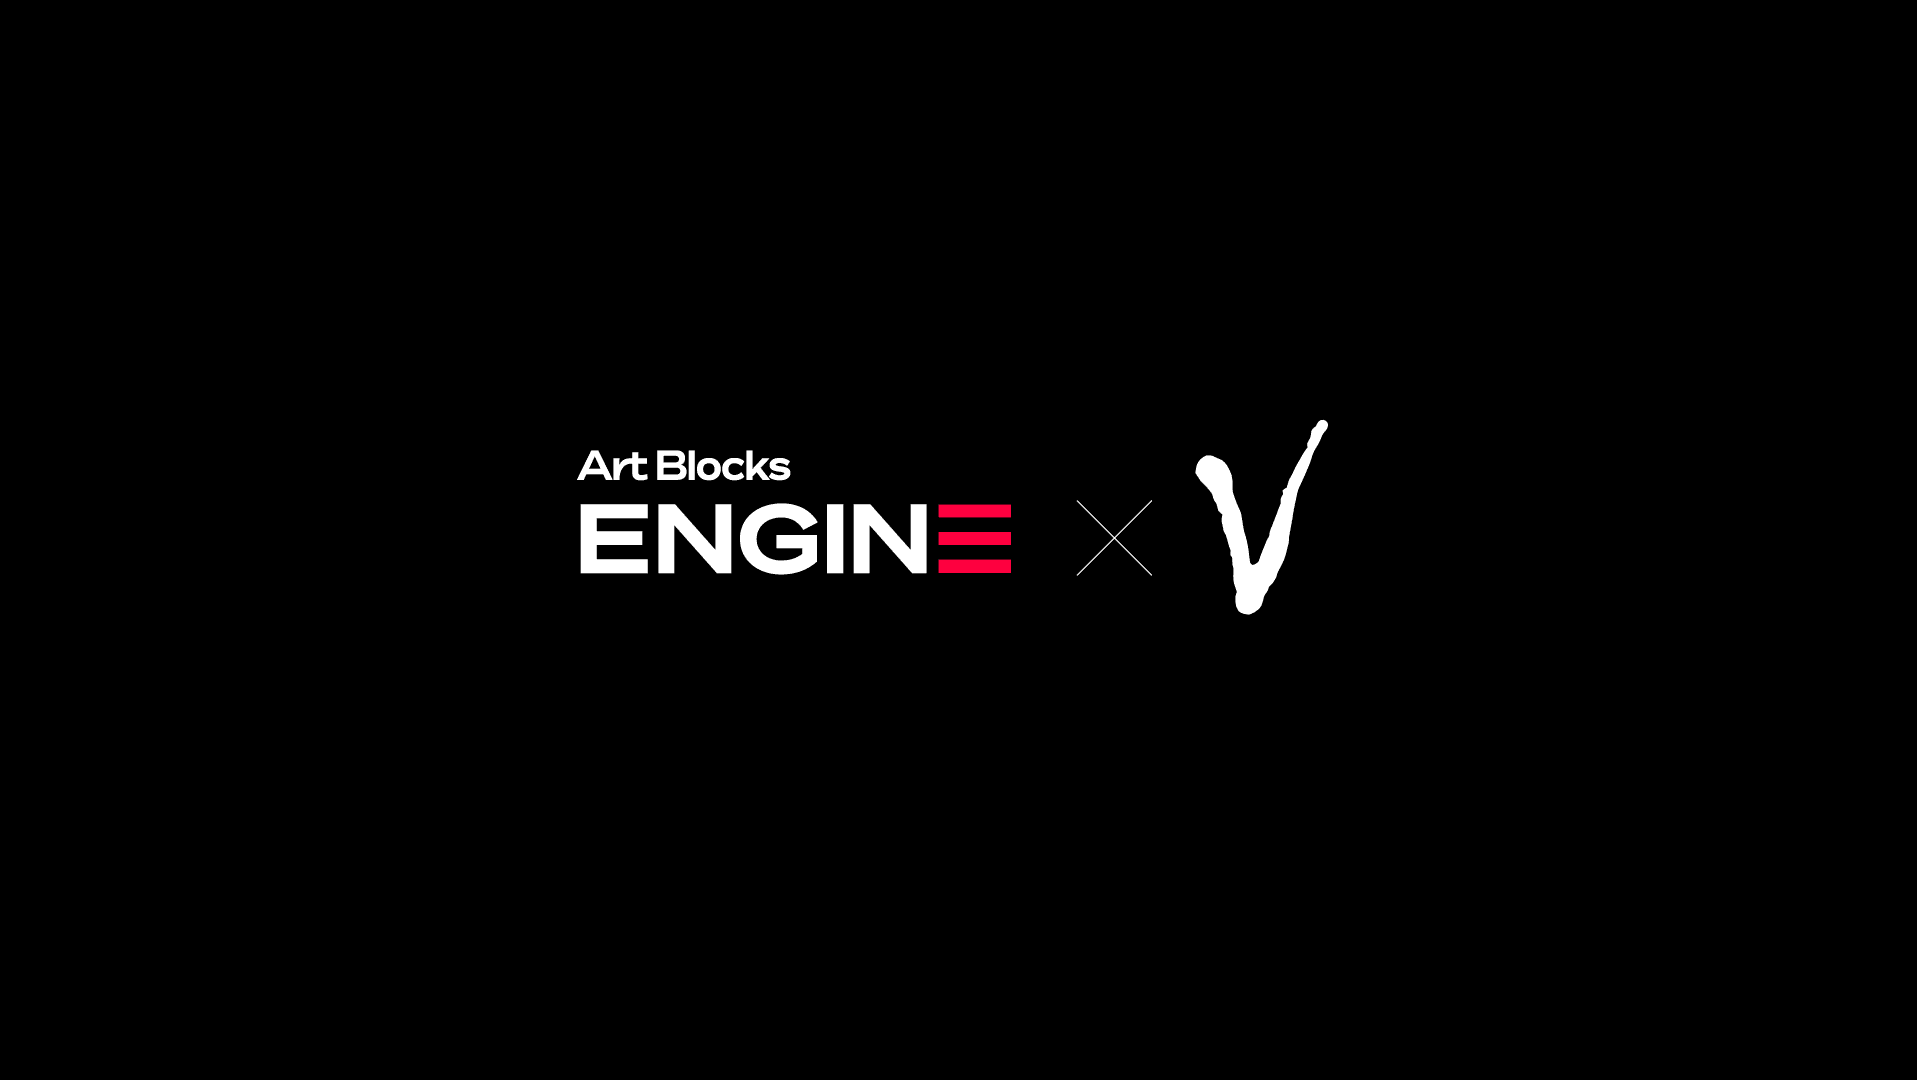 VCA_AB_Engine 배너